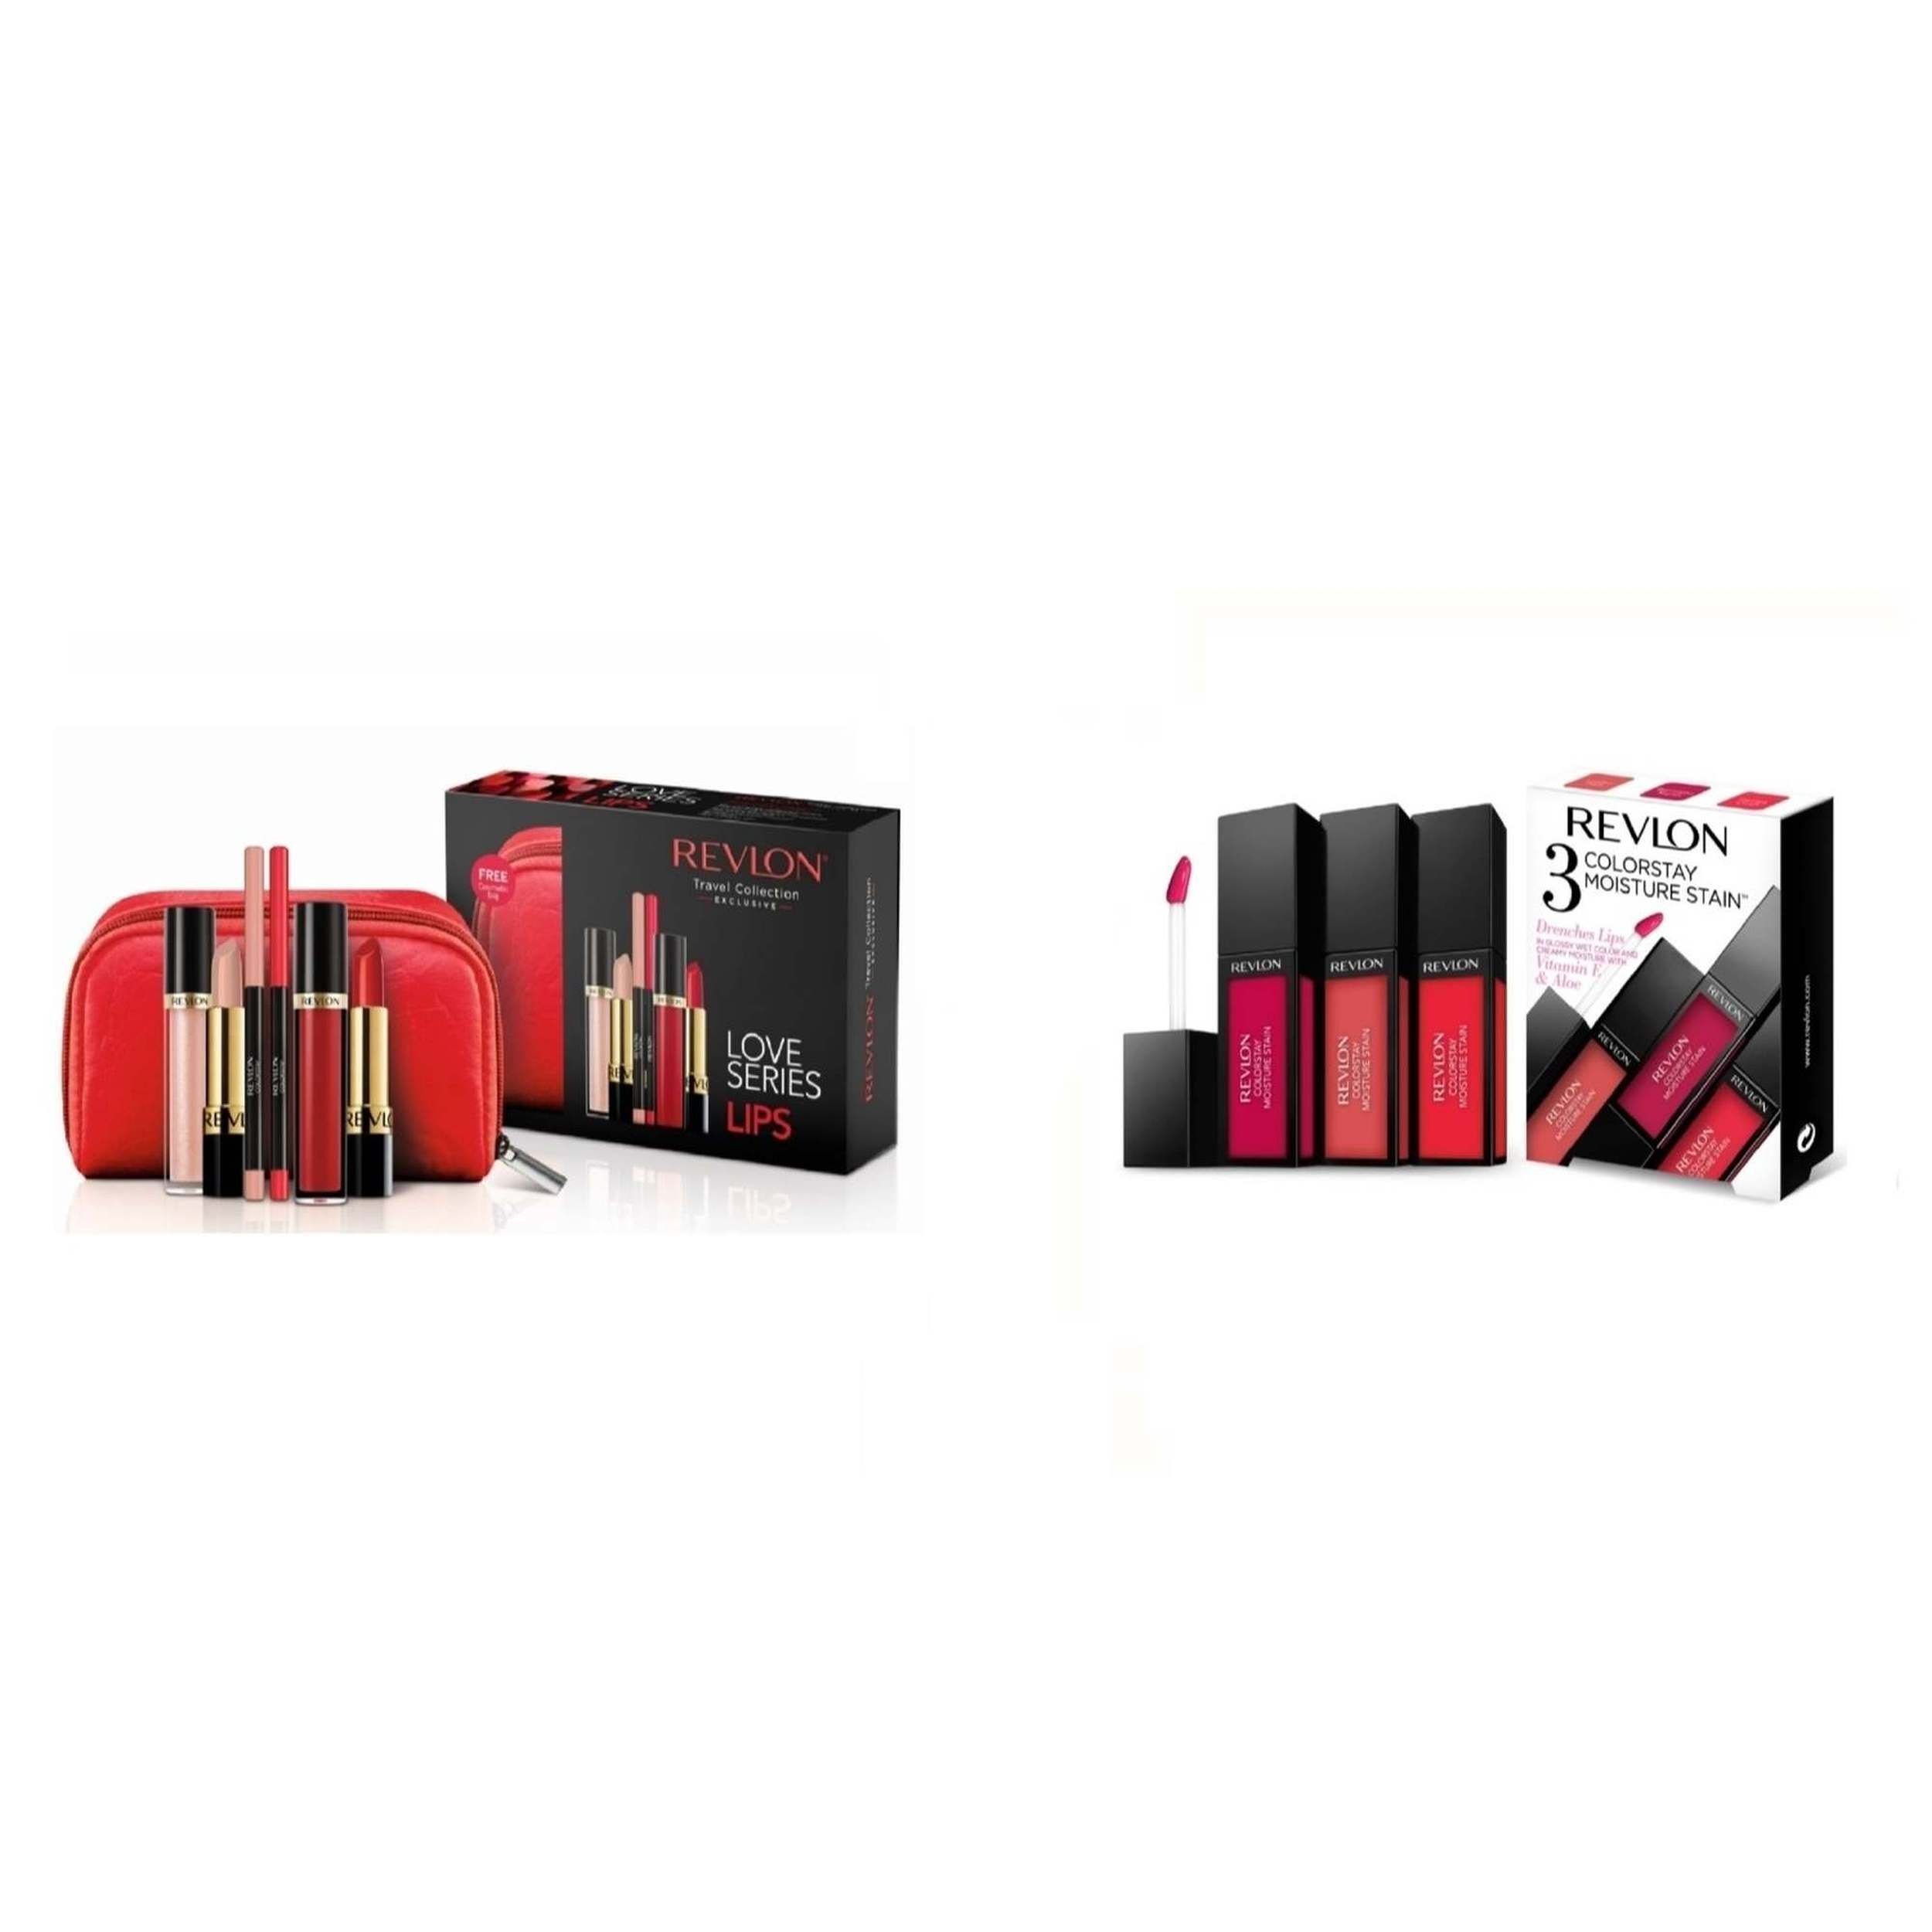 Revlon Lippenstift-Set Geschenkset bestehend aus Lippenstiften